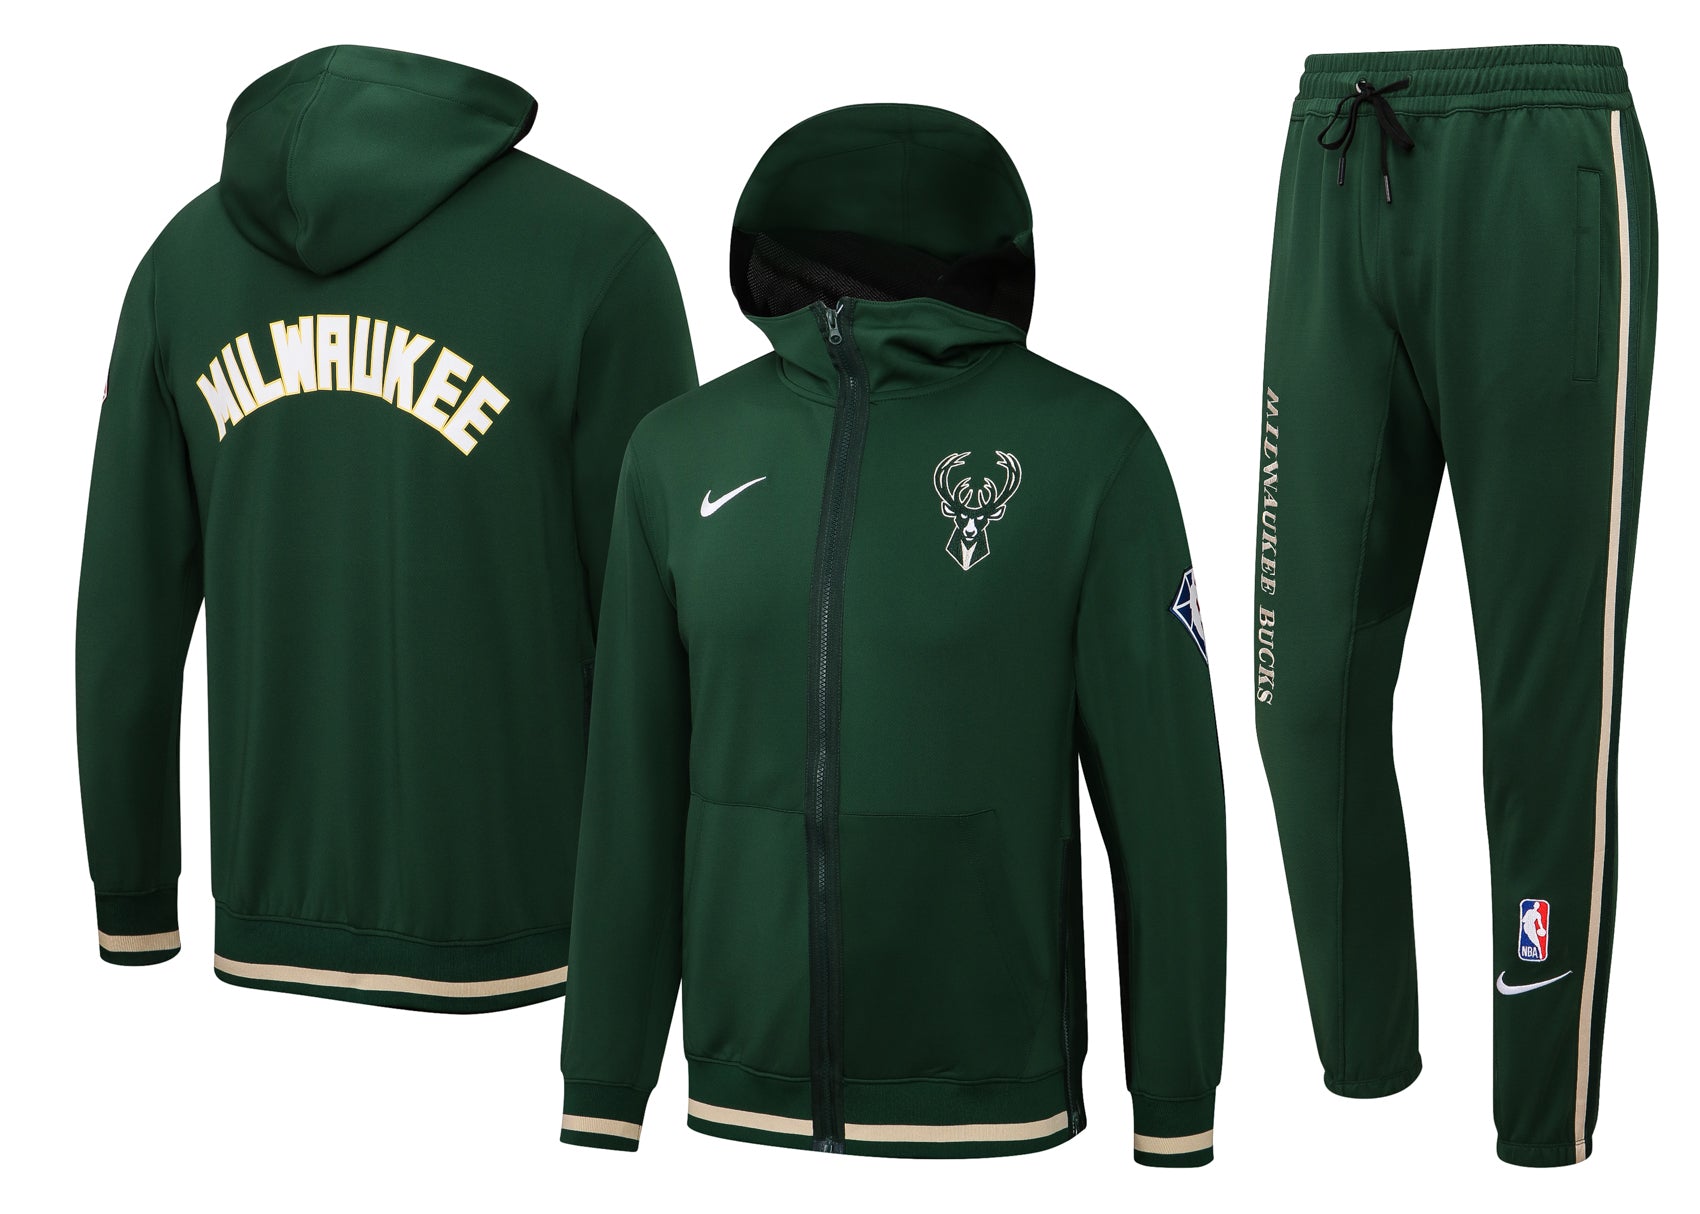 Milwaukee green suit